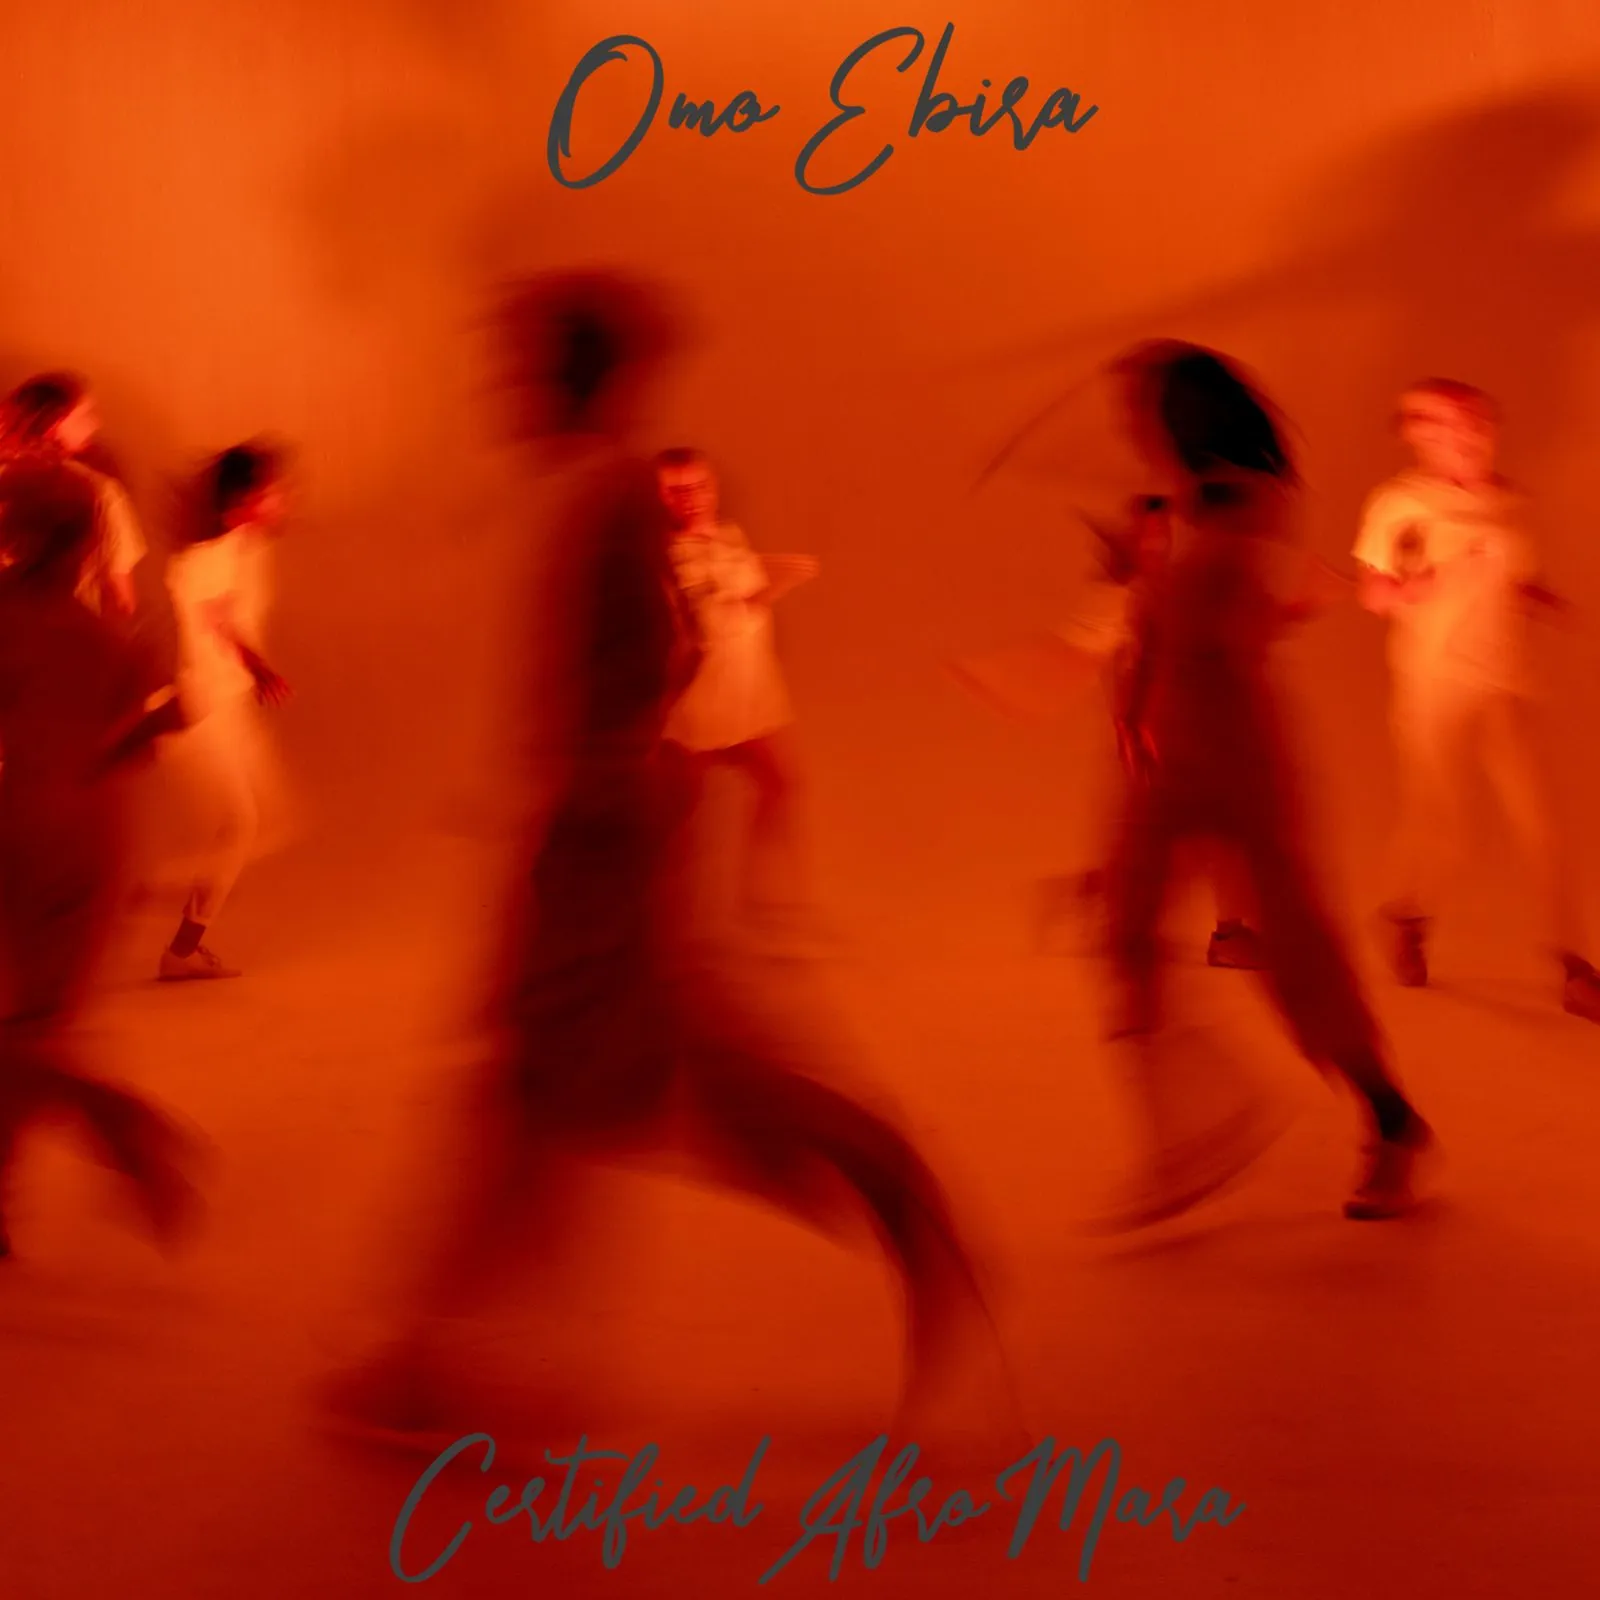 Omo Ebira – Certified Afro Mara (EP)